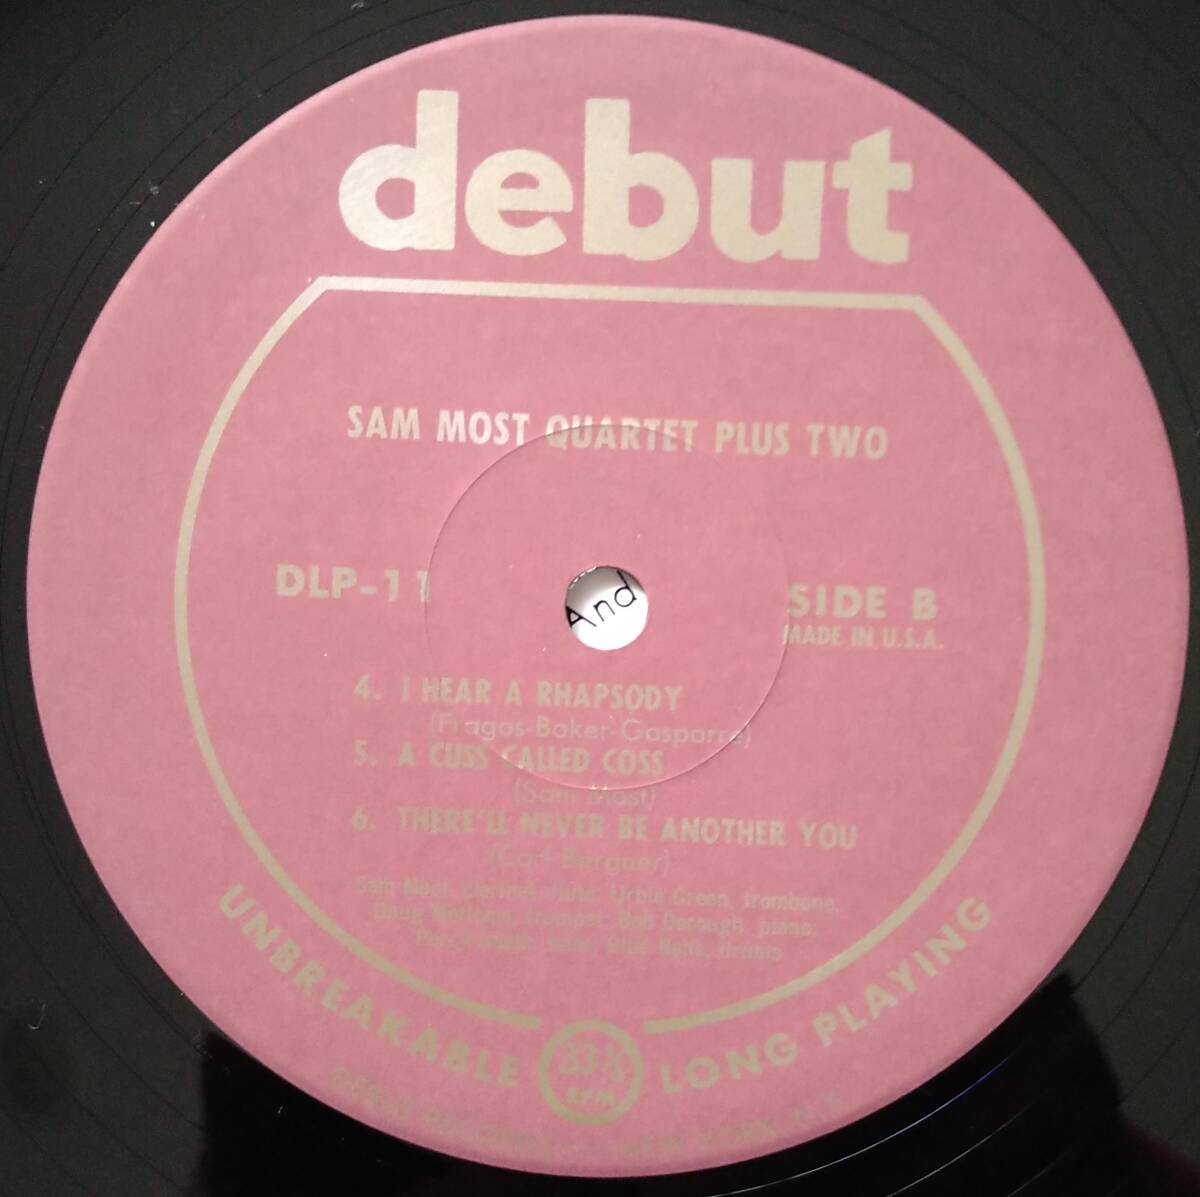 日本盤【Sam Most】quartet plus two (Debut DLP-11) Wave Jazz Classics 厚紙の美盤です _画像3